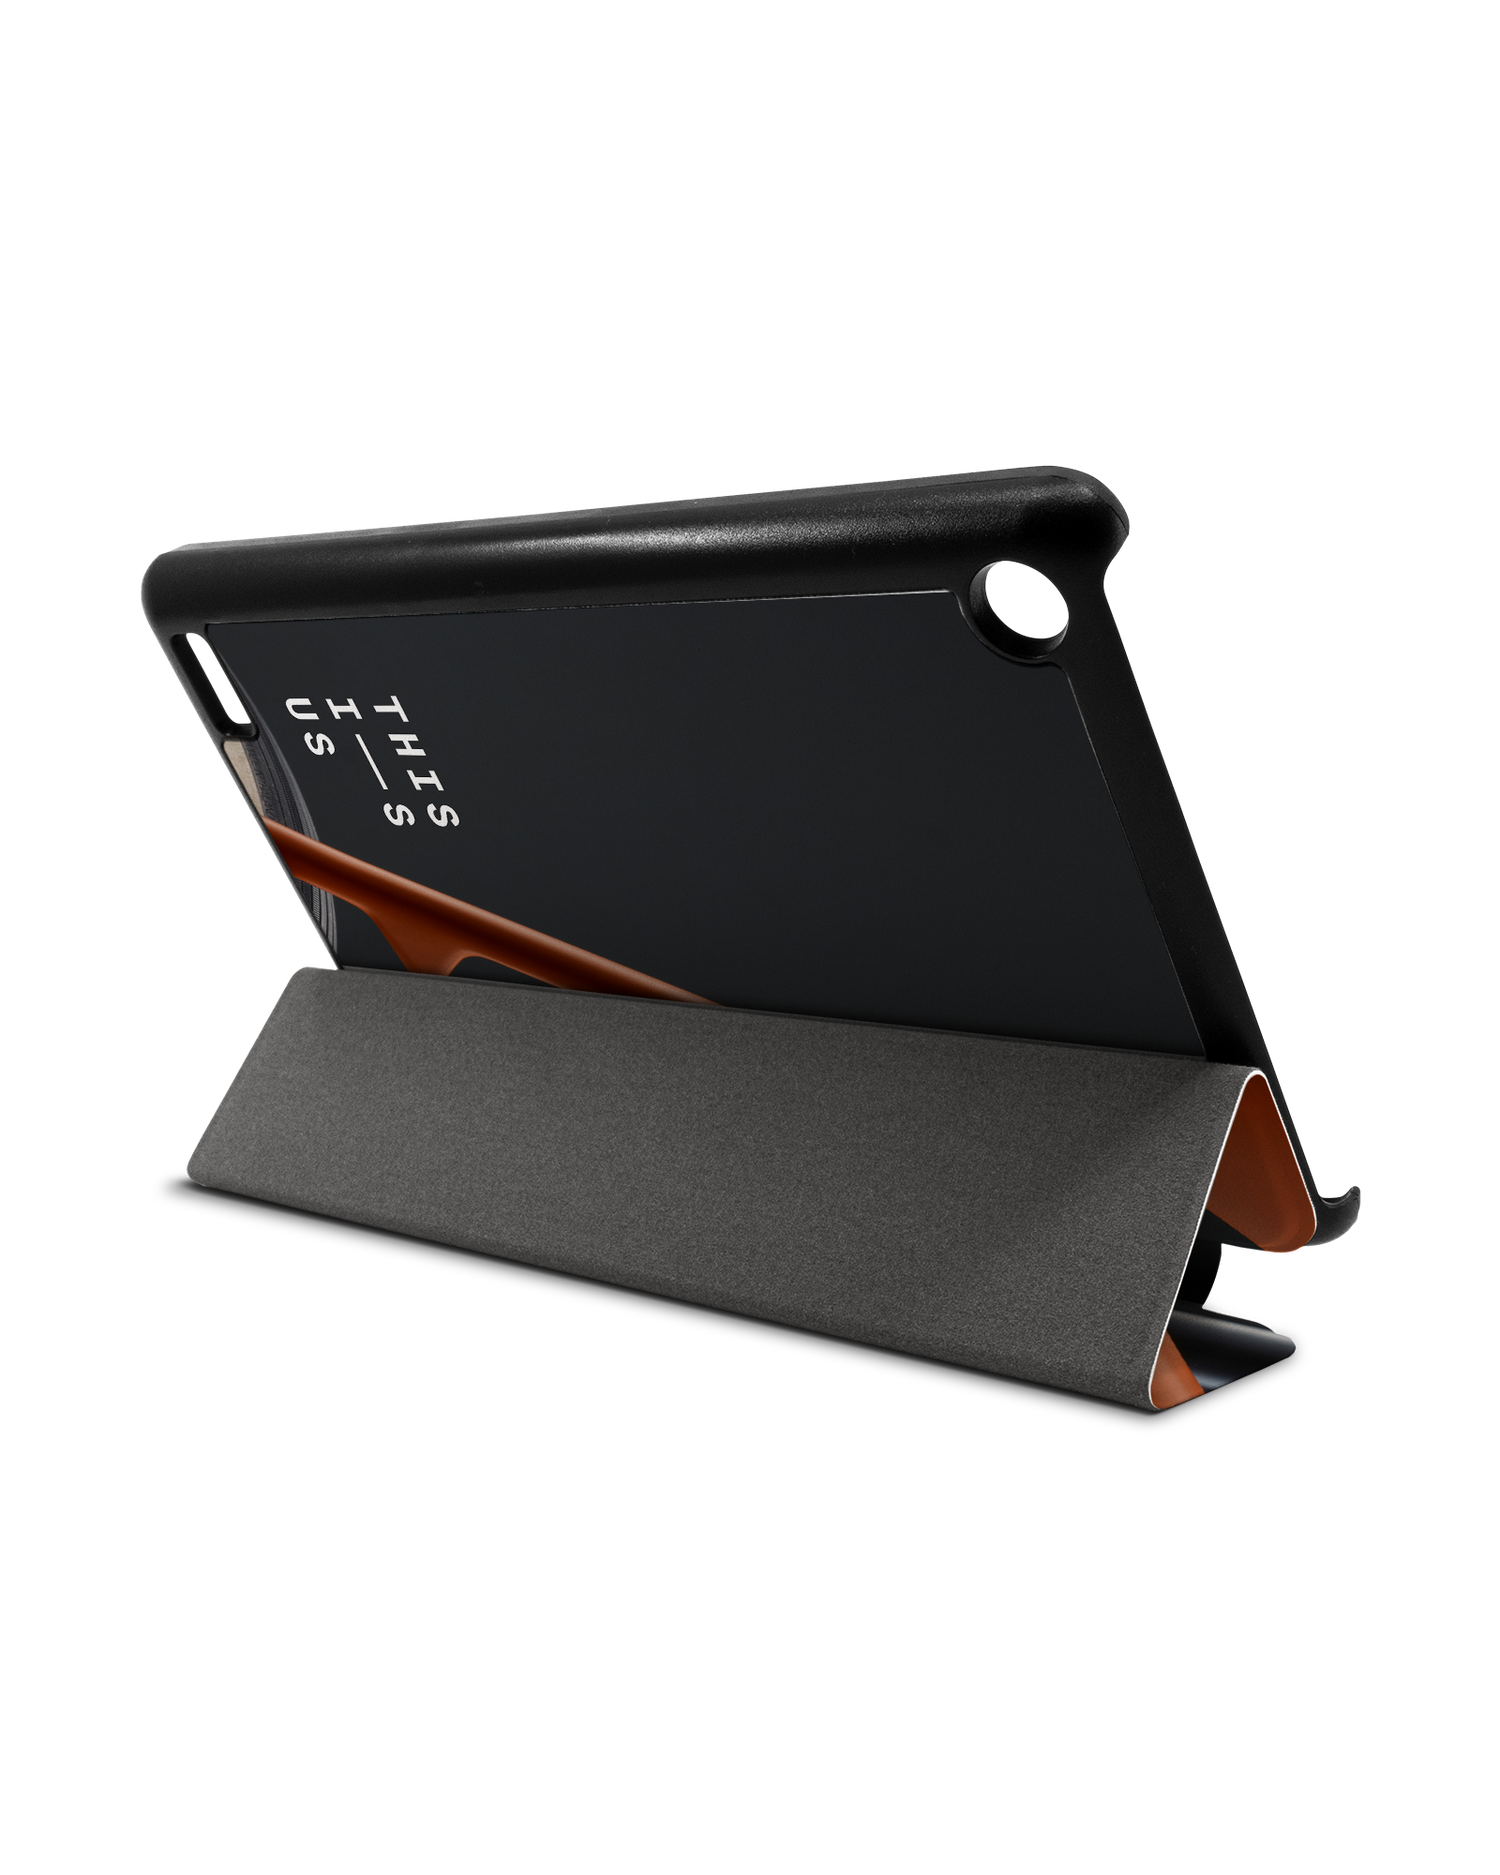 VRC Tablet Smart Case für Amazon Fire 7: Aufgestellt im Querformat